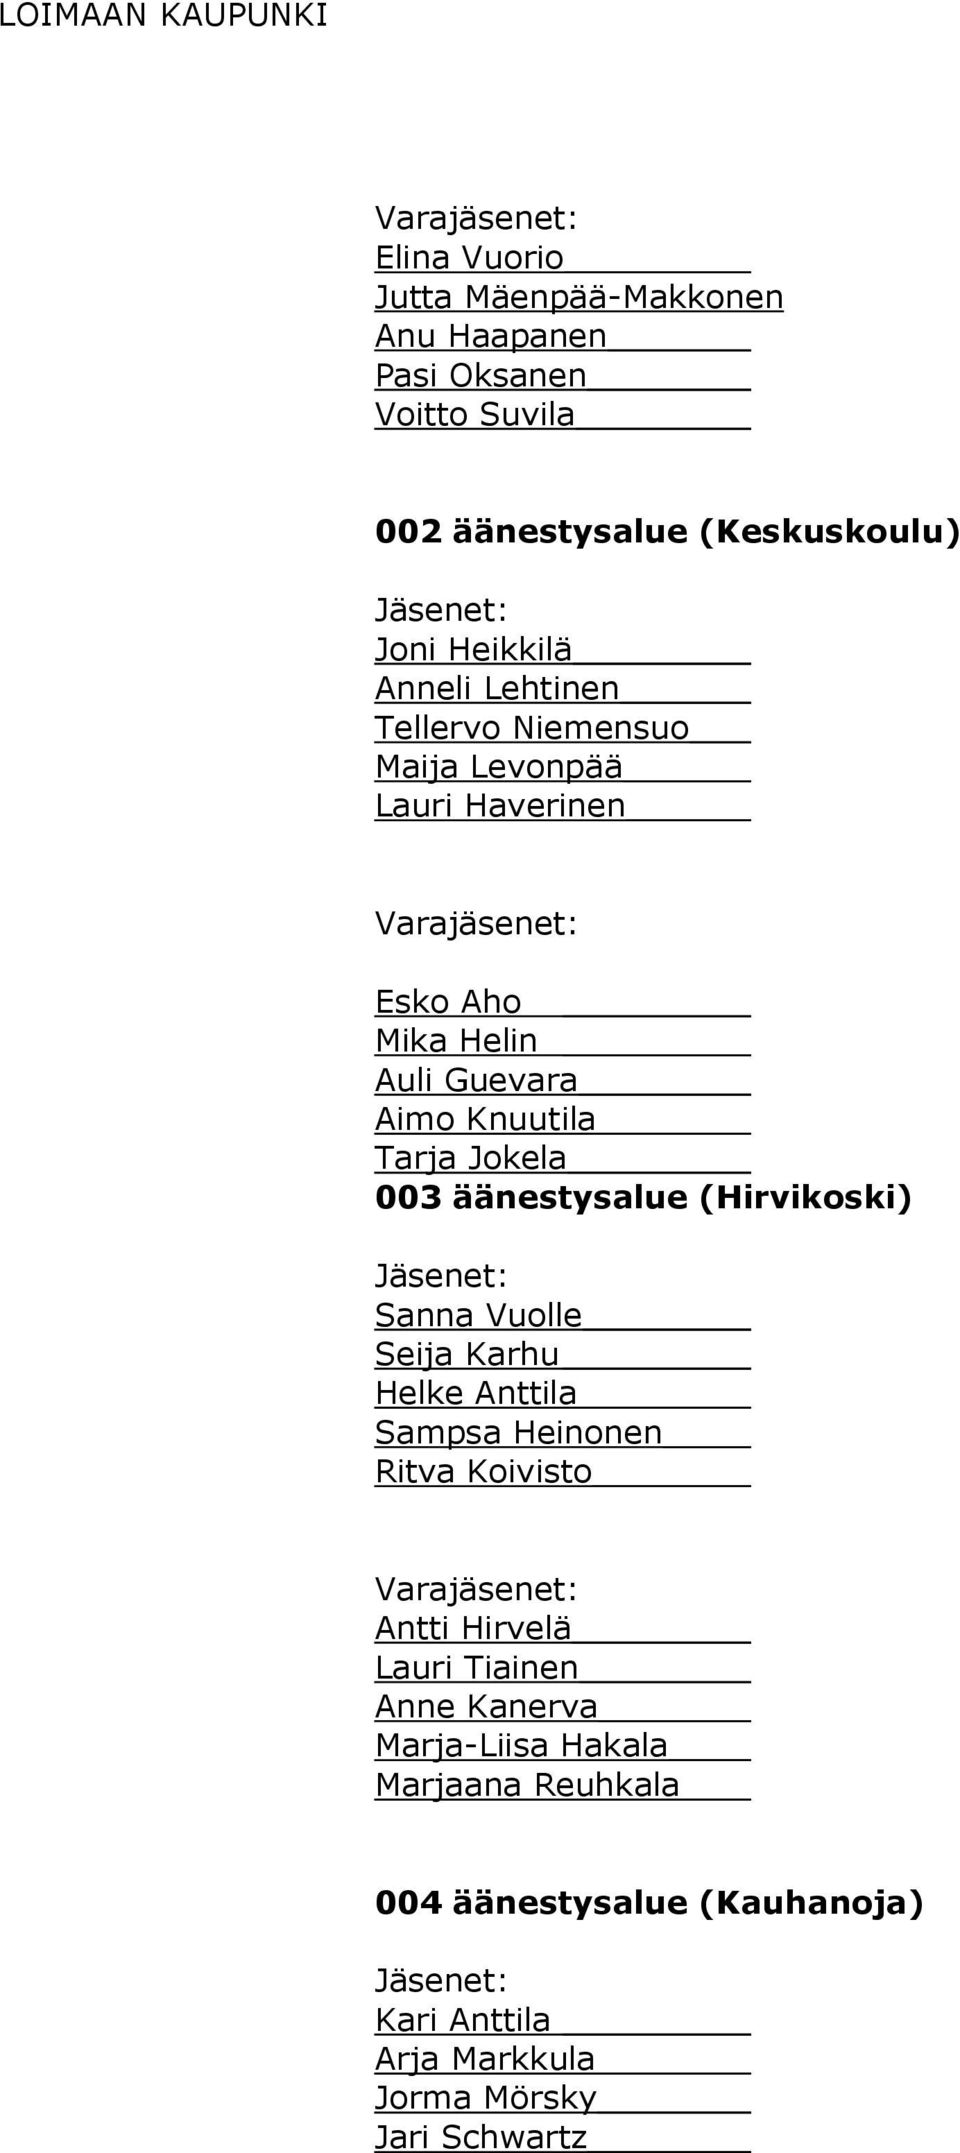 003 äänestysalue (Hirvikoski) Sanna Vuolle Seija Karhu Helke Anttila Sampsa Heinonen Ritva Koivisto Antti Hirvelä Lauri